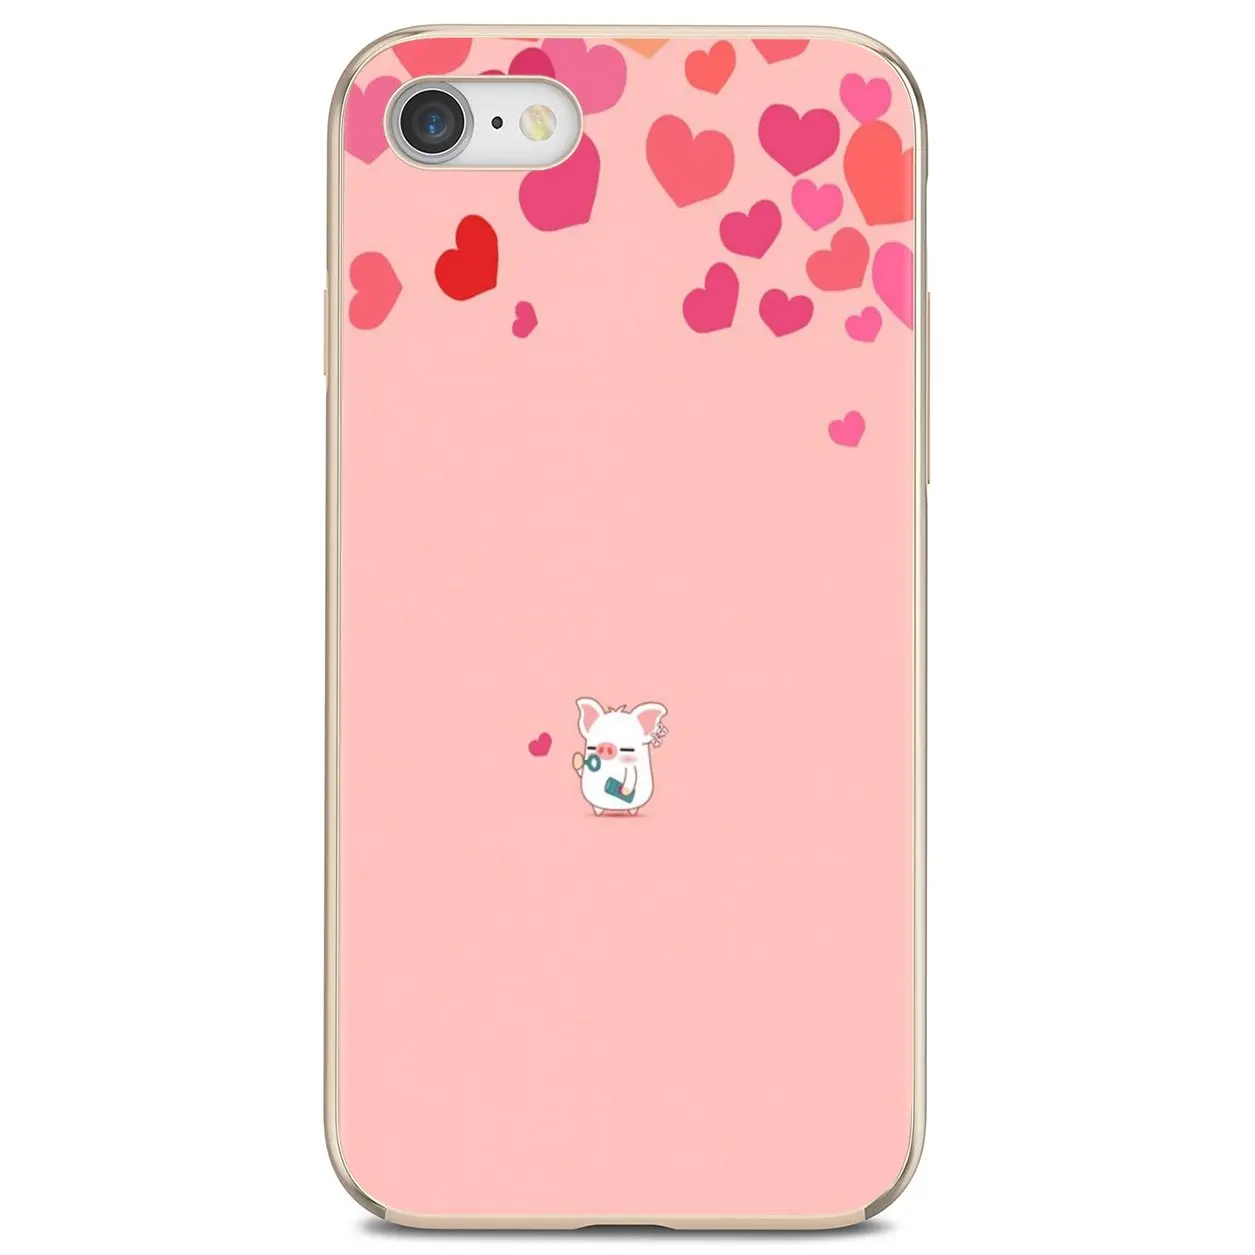 Дешевый силиконовый чехол для телефона забавный мультяшный Розовый Свинья Huawei P8